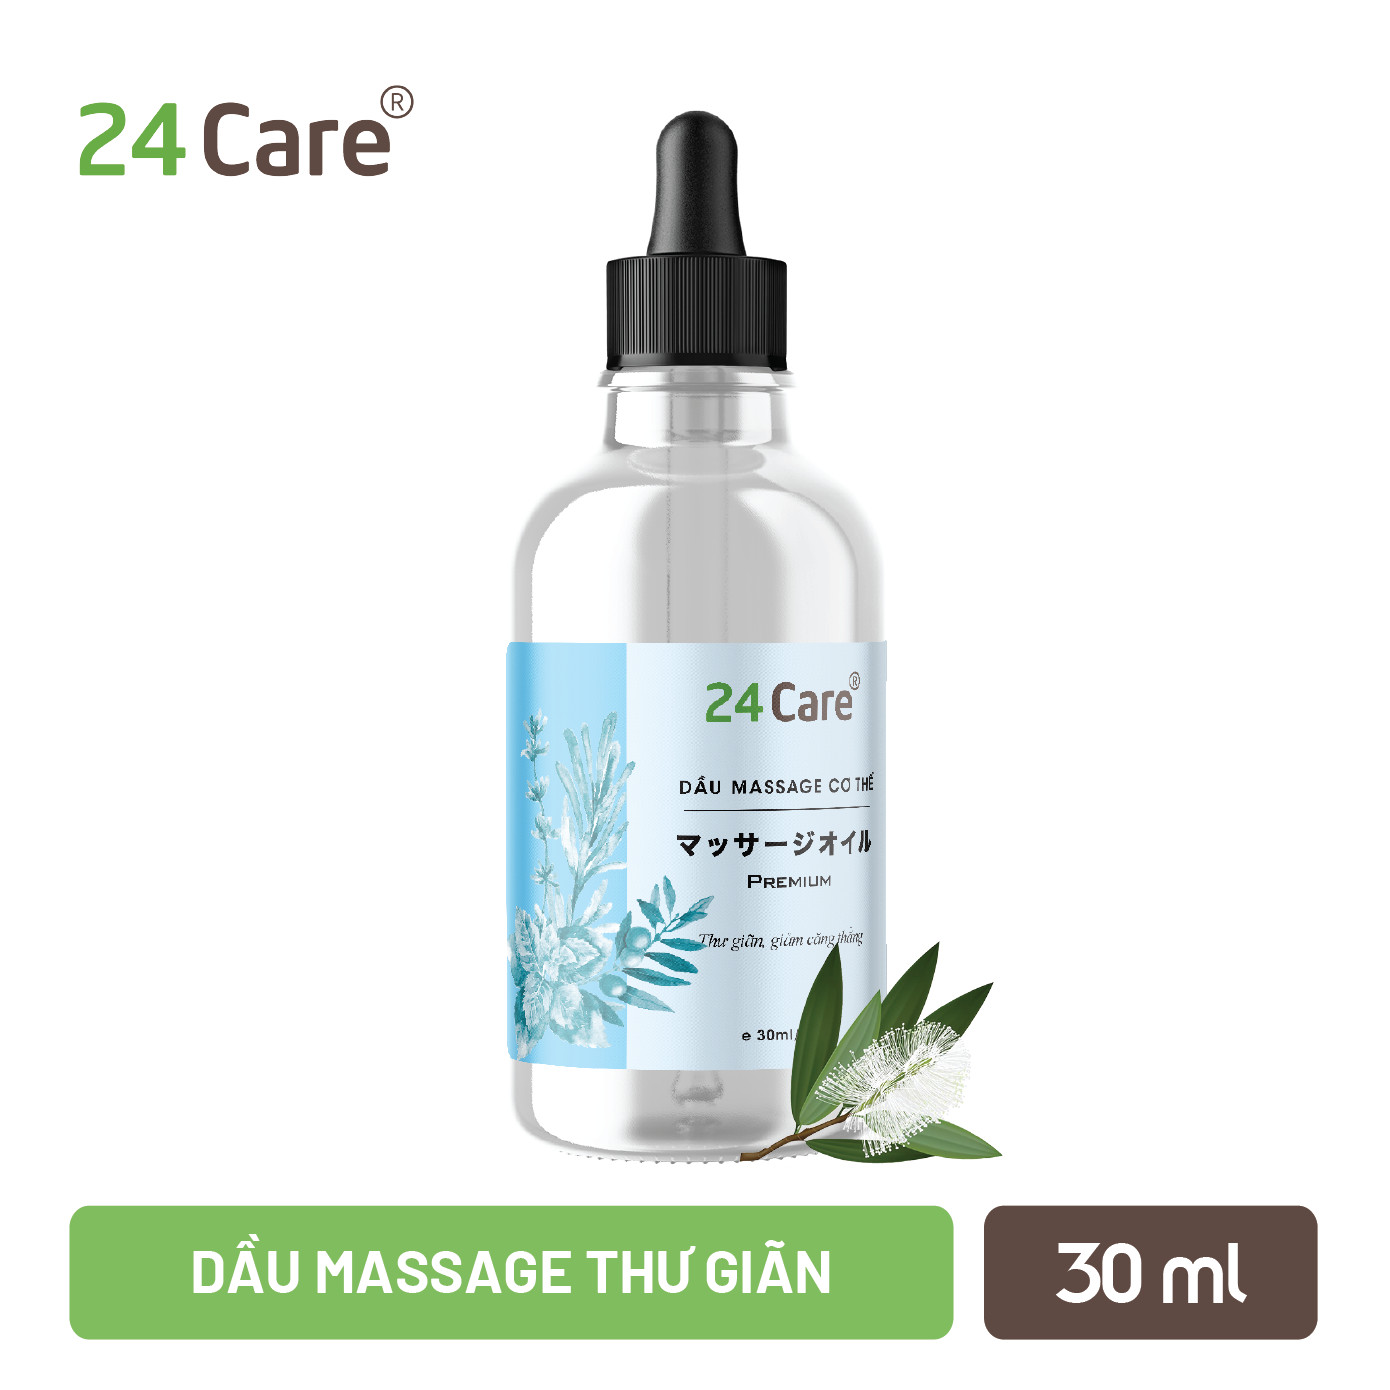 Dầu massage thư giãn Nam Nữ thảo dược thiên nhiên 24Care - 30ml